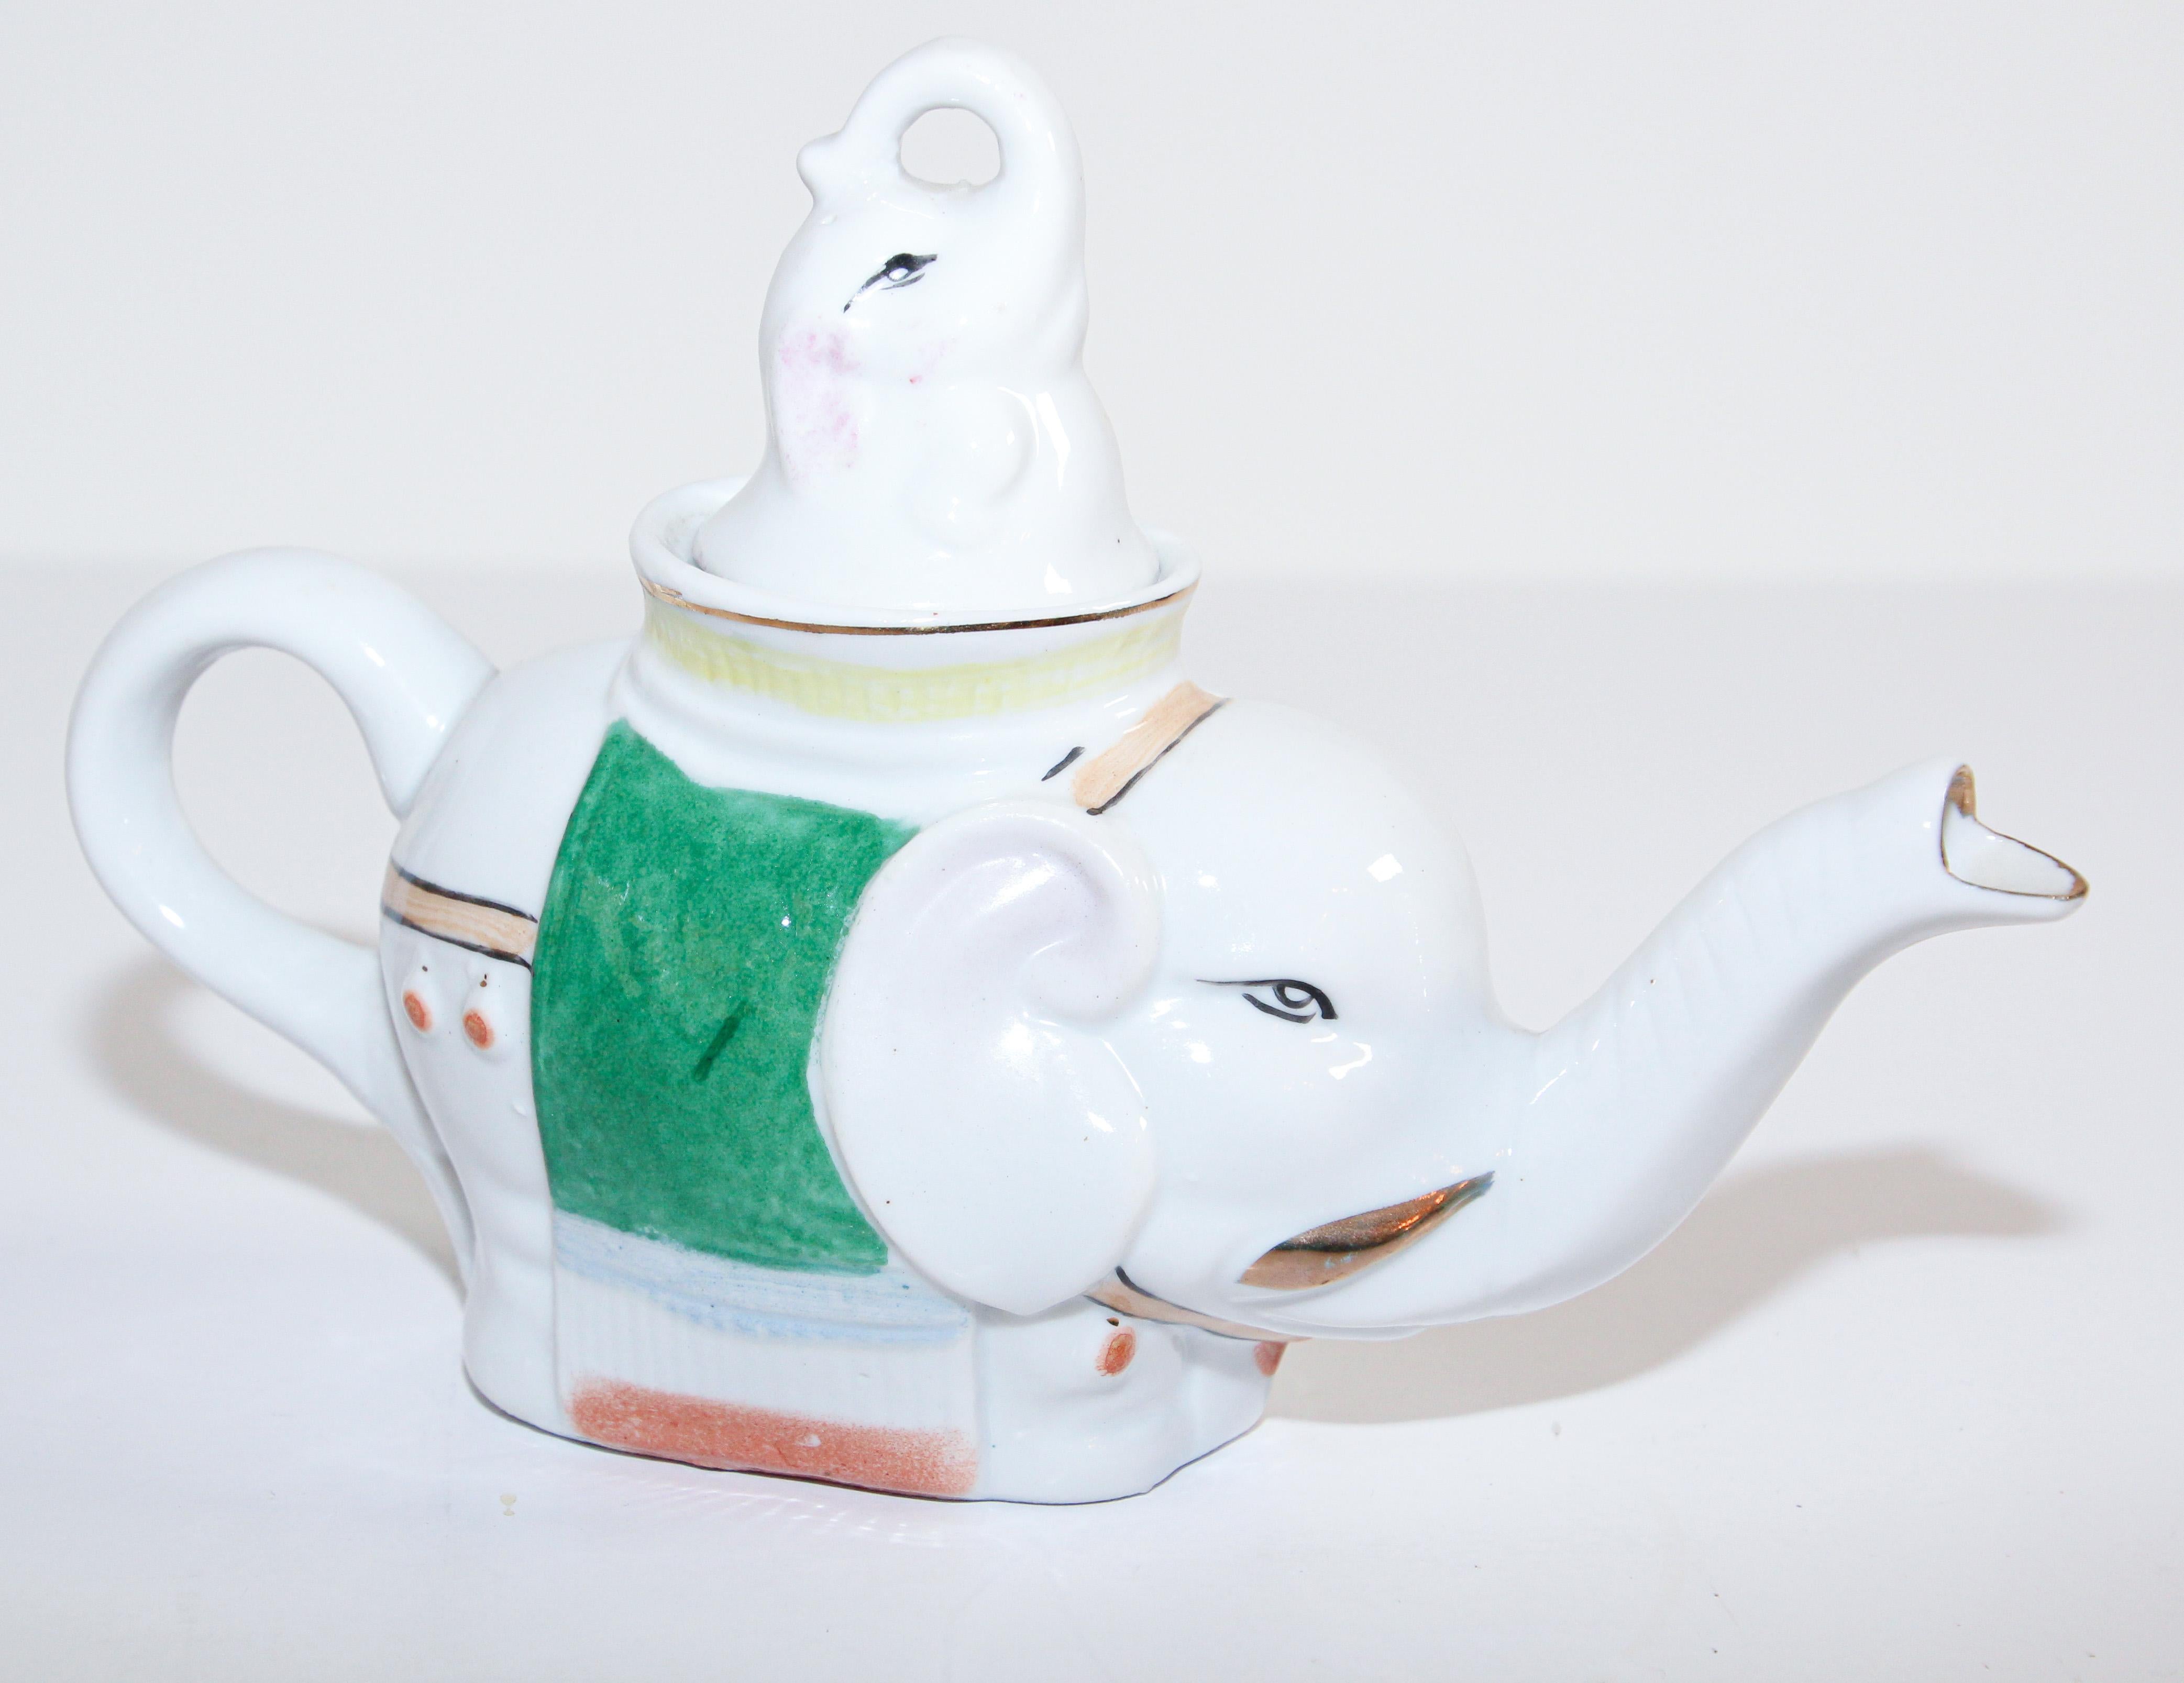 antique elephant teapot